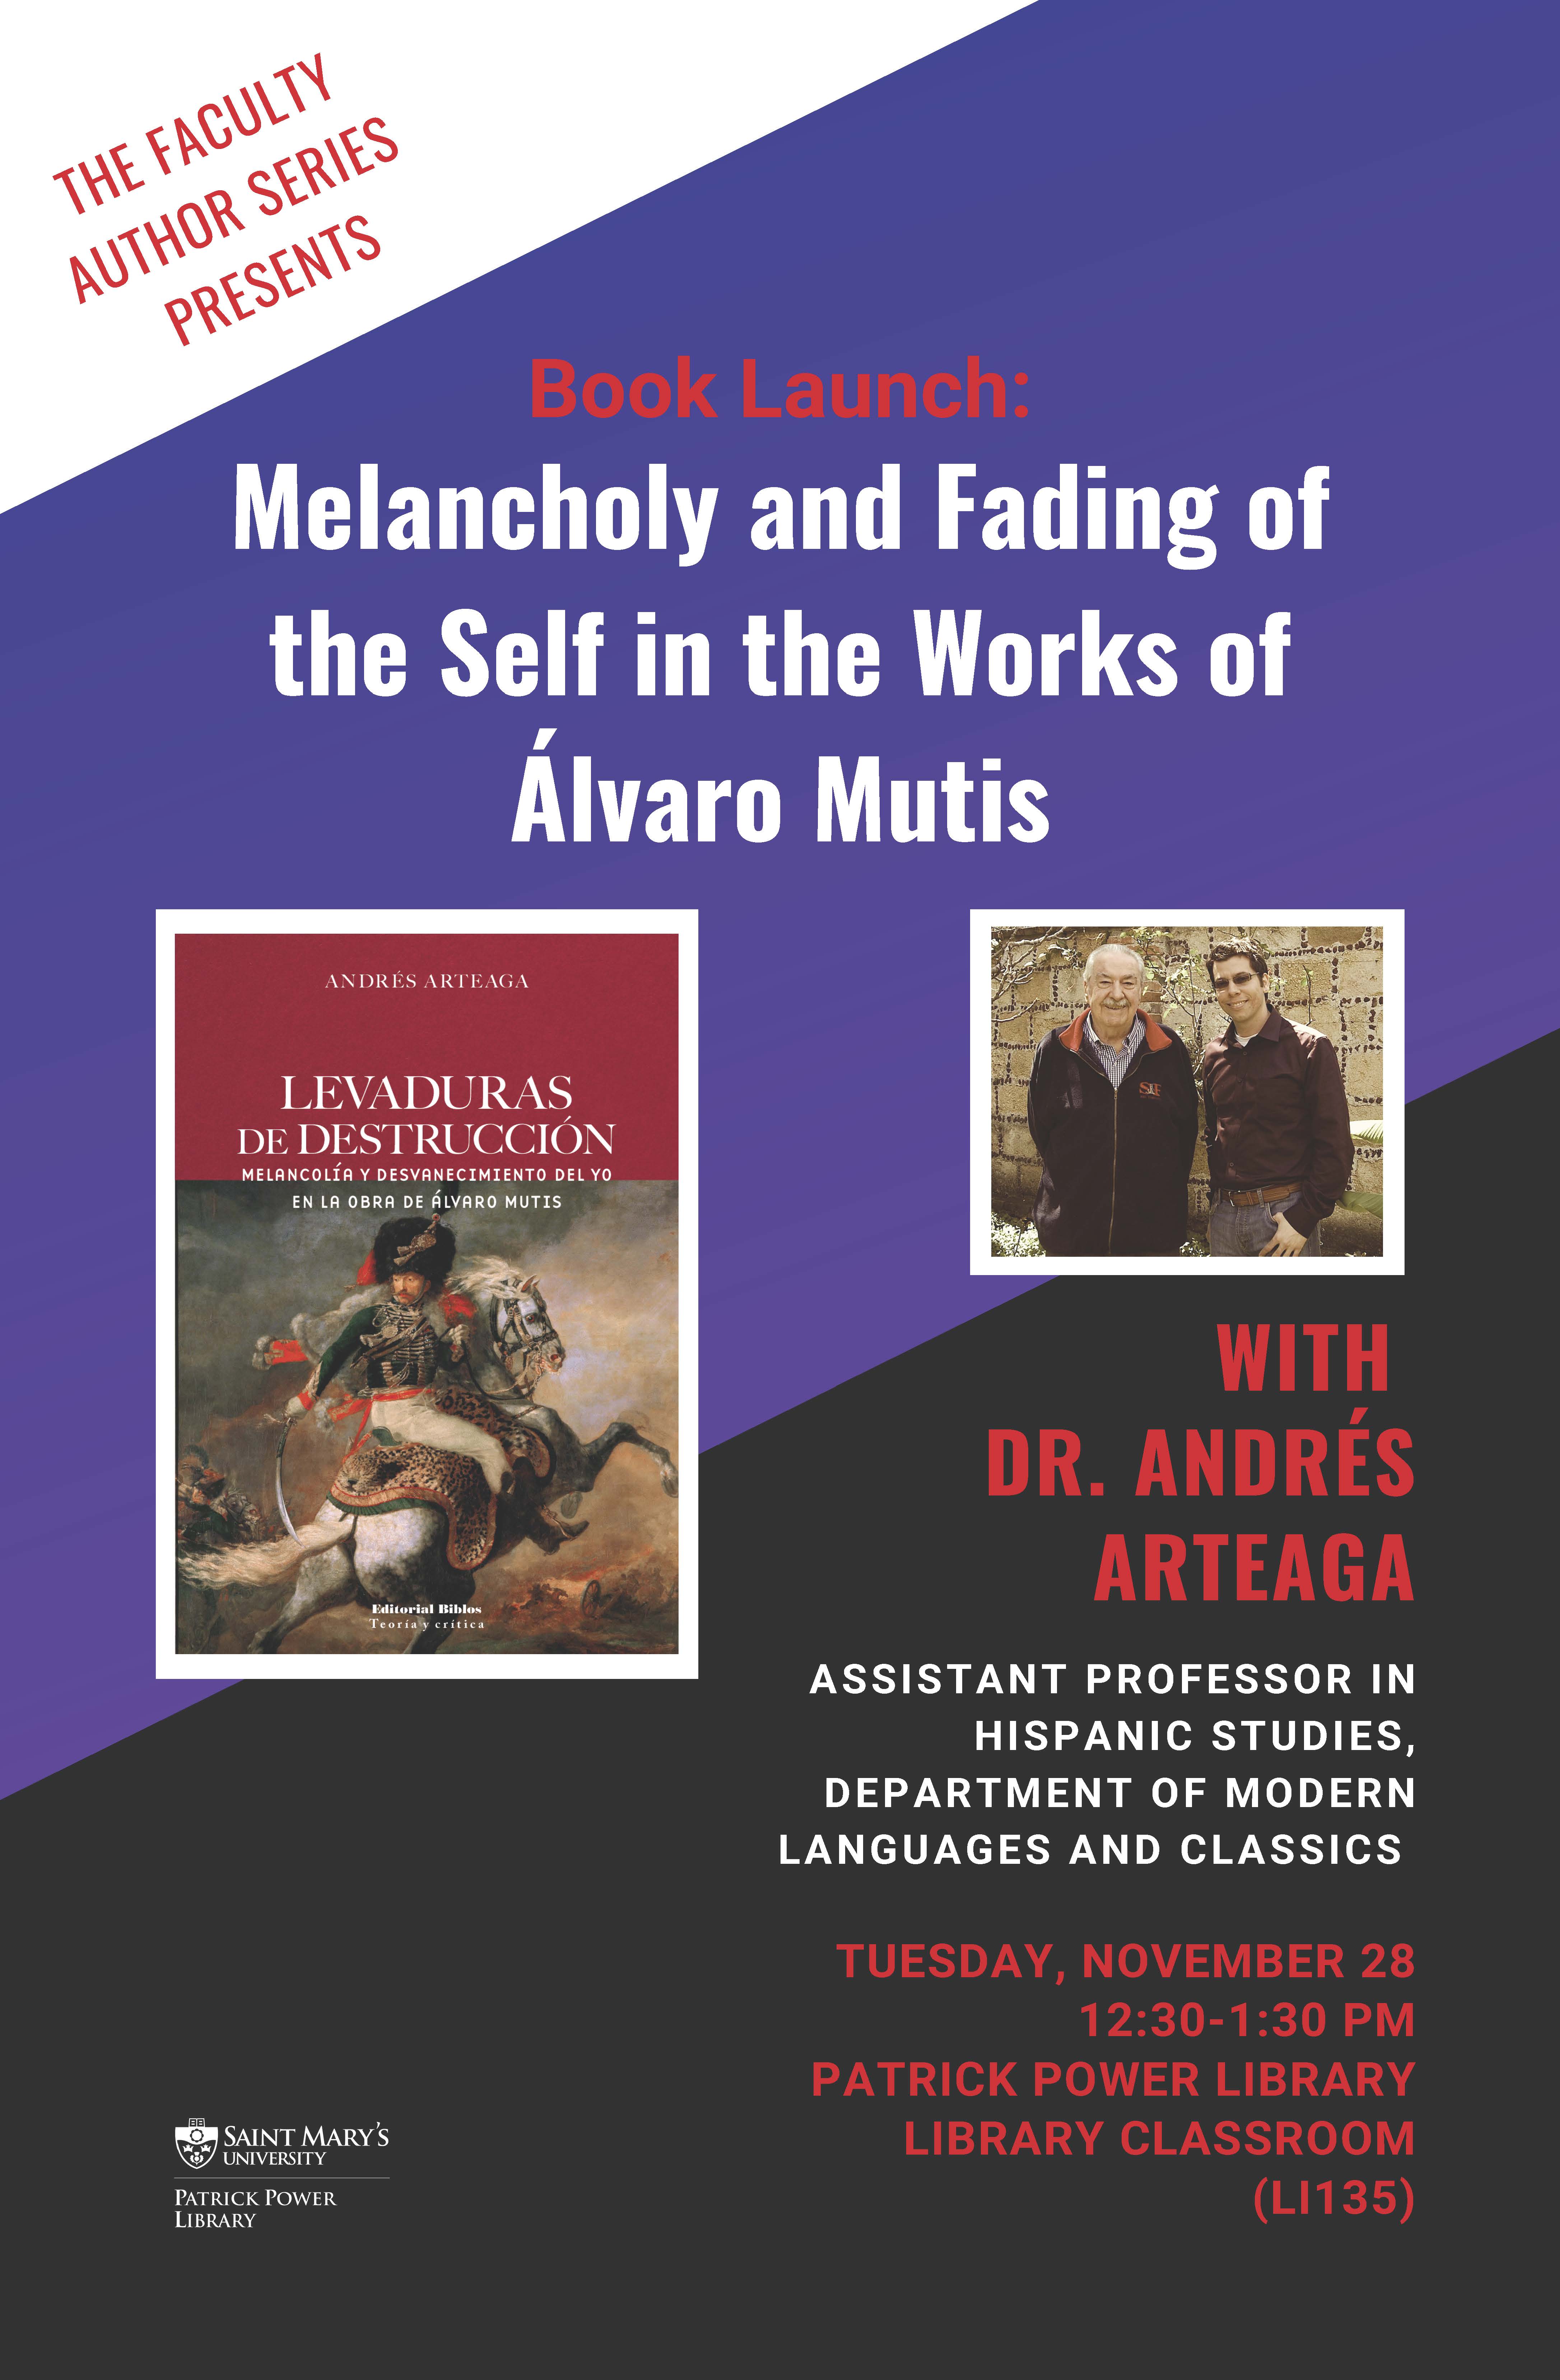 Book Launch - Andres Arteaga 2019 